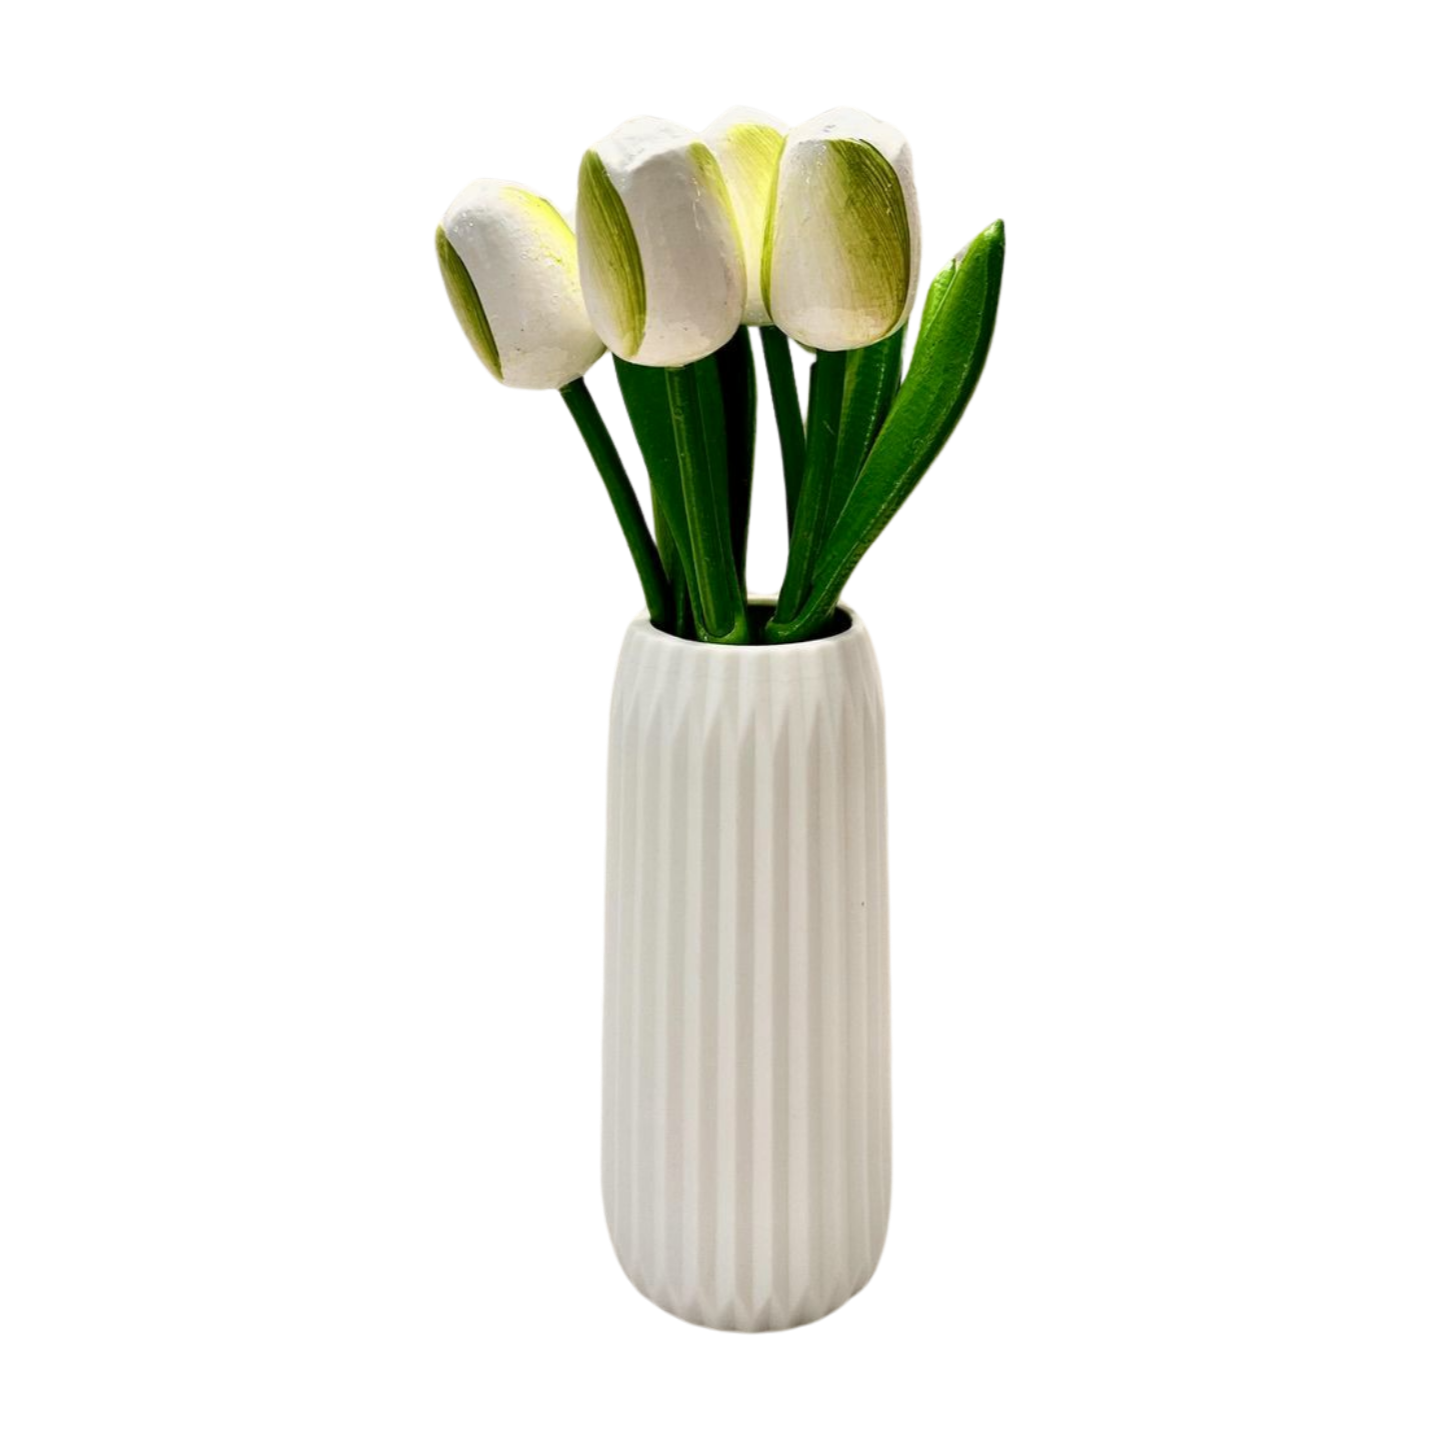 Wooden Dutch tulips in white